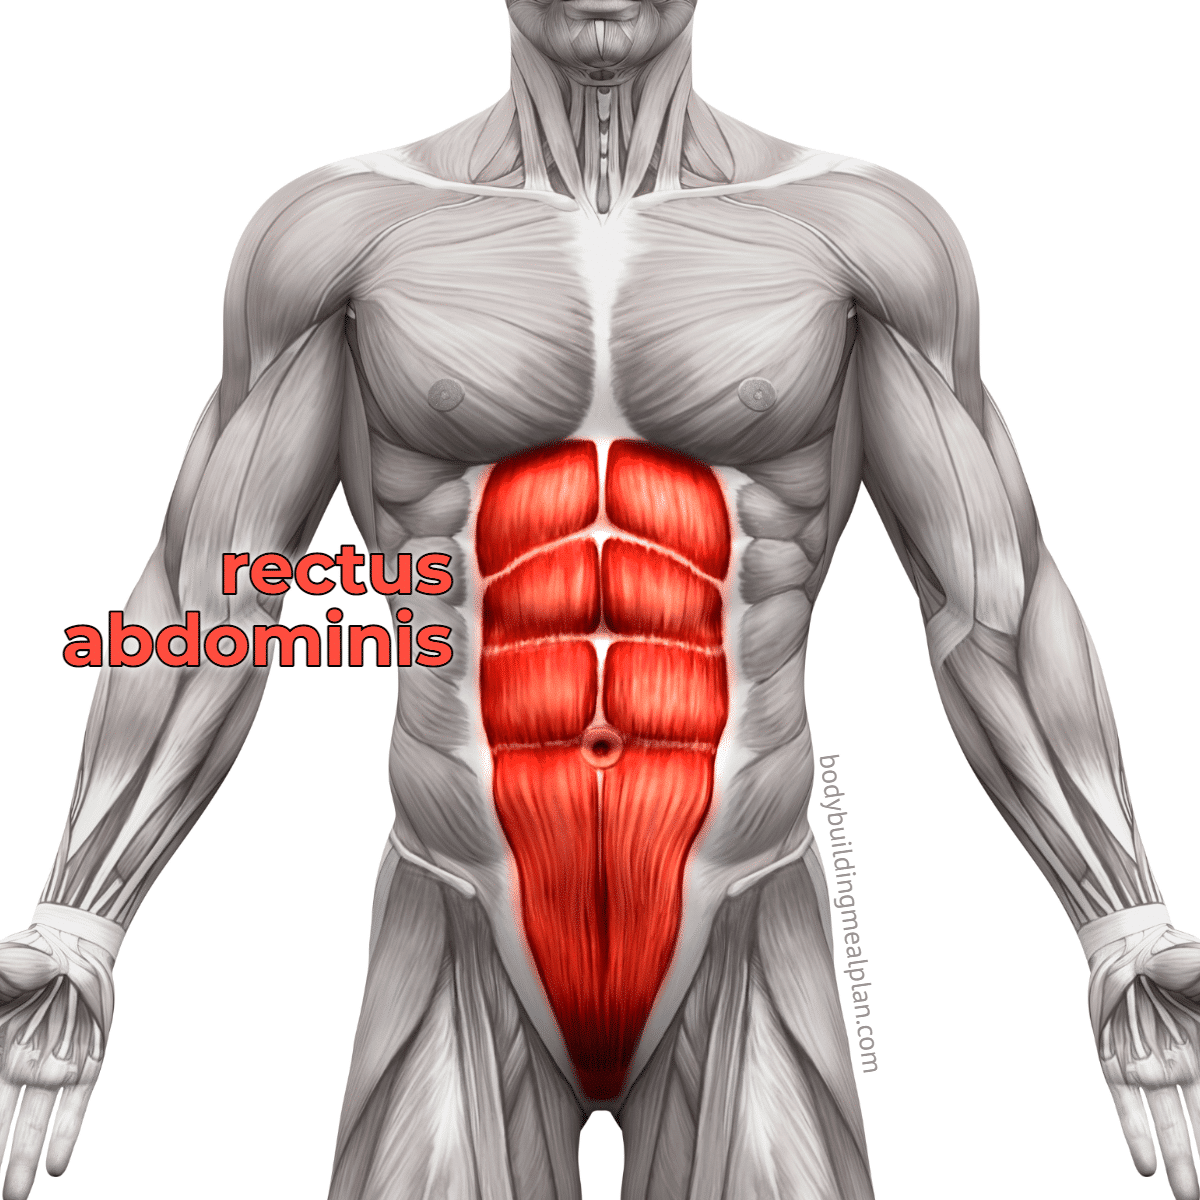 Do four-pack abs look good? : r/musclegut